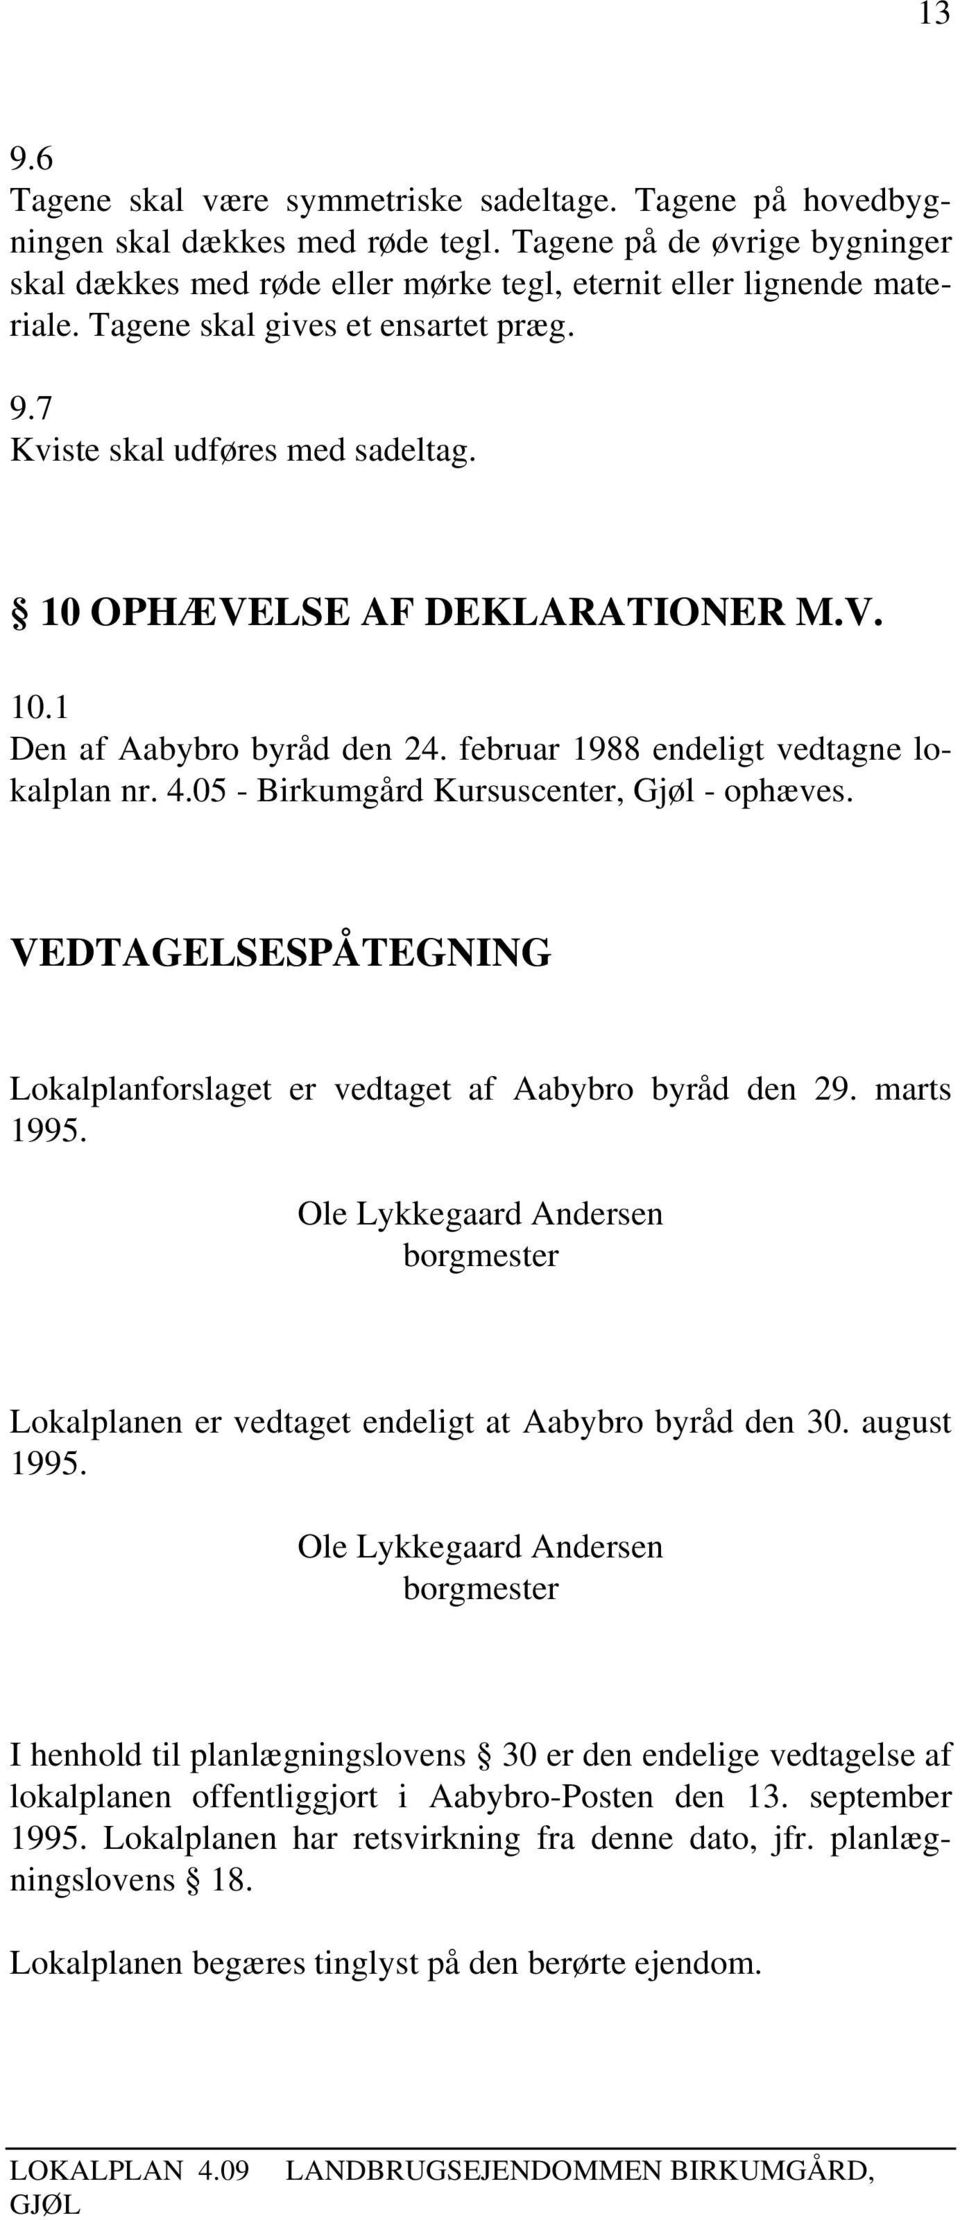 10 OPHÆVELSE AF DEKLARATIONER M.V. 10.1 Den af Aabybro byråd den 24. februar 1988 endeligt vedtagne lokalplan nr. 4.05 - Birkumgård Kursuscenter, Gjøl - ophæves.